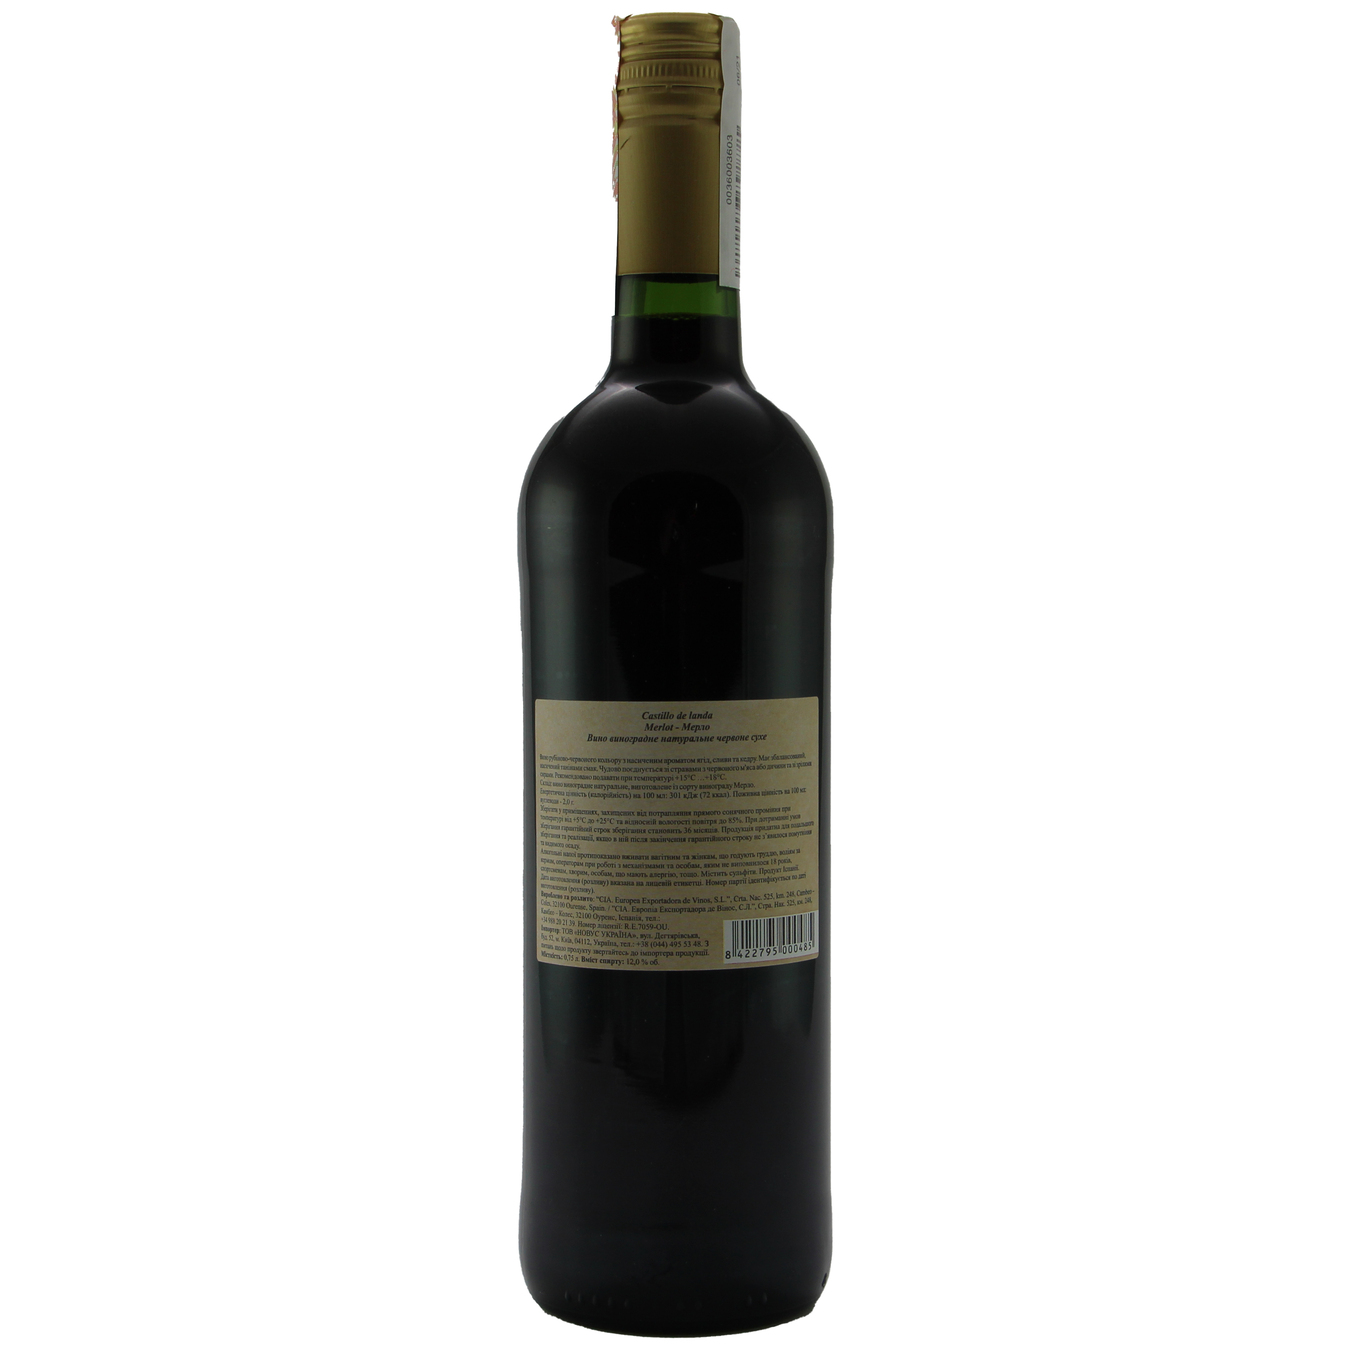 Вино Castillo de landa Merlot красное сухое 12% 0,75л 2